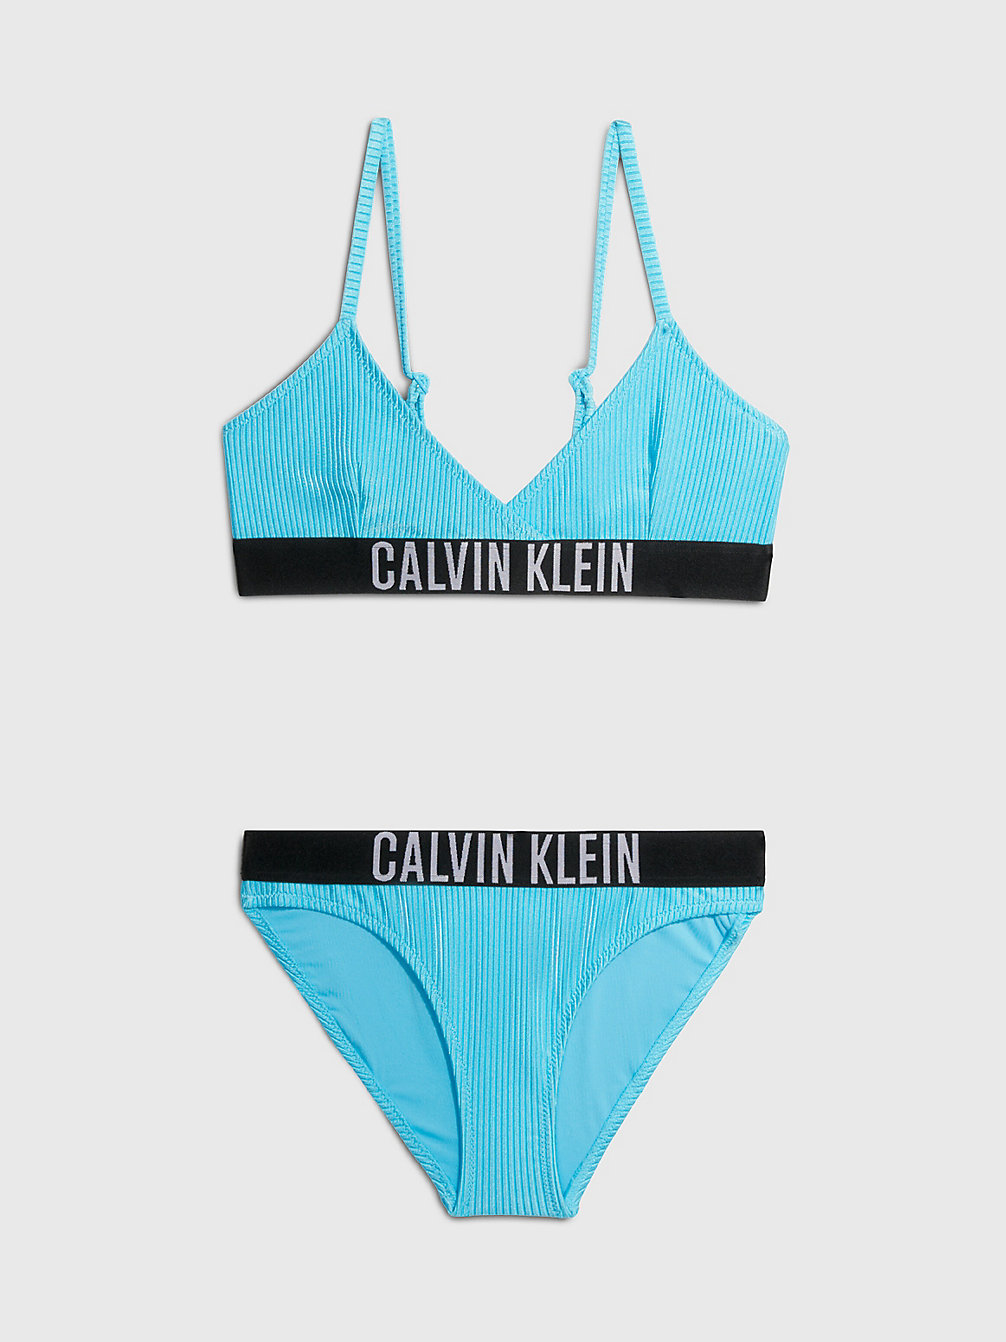 BLUE TIDE > Dziewczęcy Strój Kąpielowy Bikini Z Trójkątnymi Miseczkami - Intense Power > undefined girls - Calvin Klein